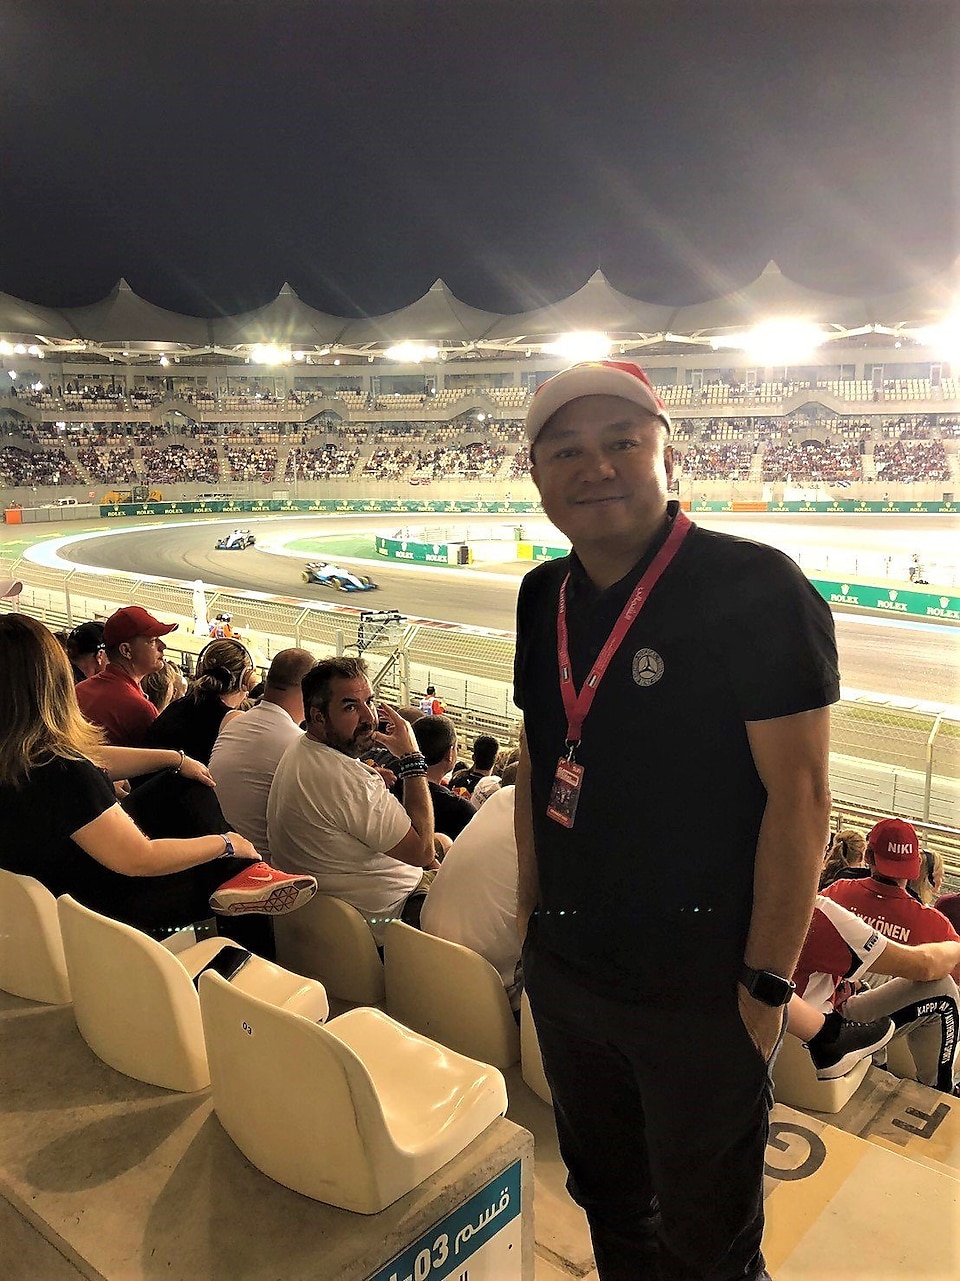 บรรยากาศก่อนเริ่มการแข่งขันฟอร์มูล่าวัน  Abu Dhabi Grand Prix 2019